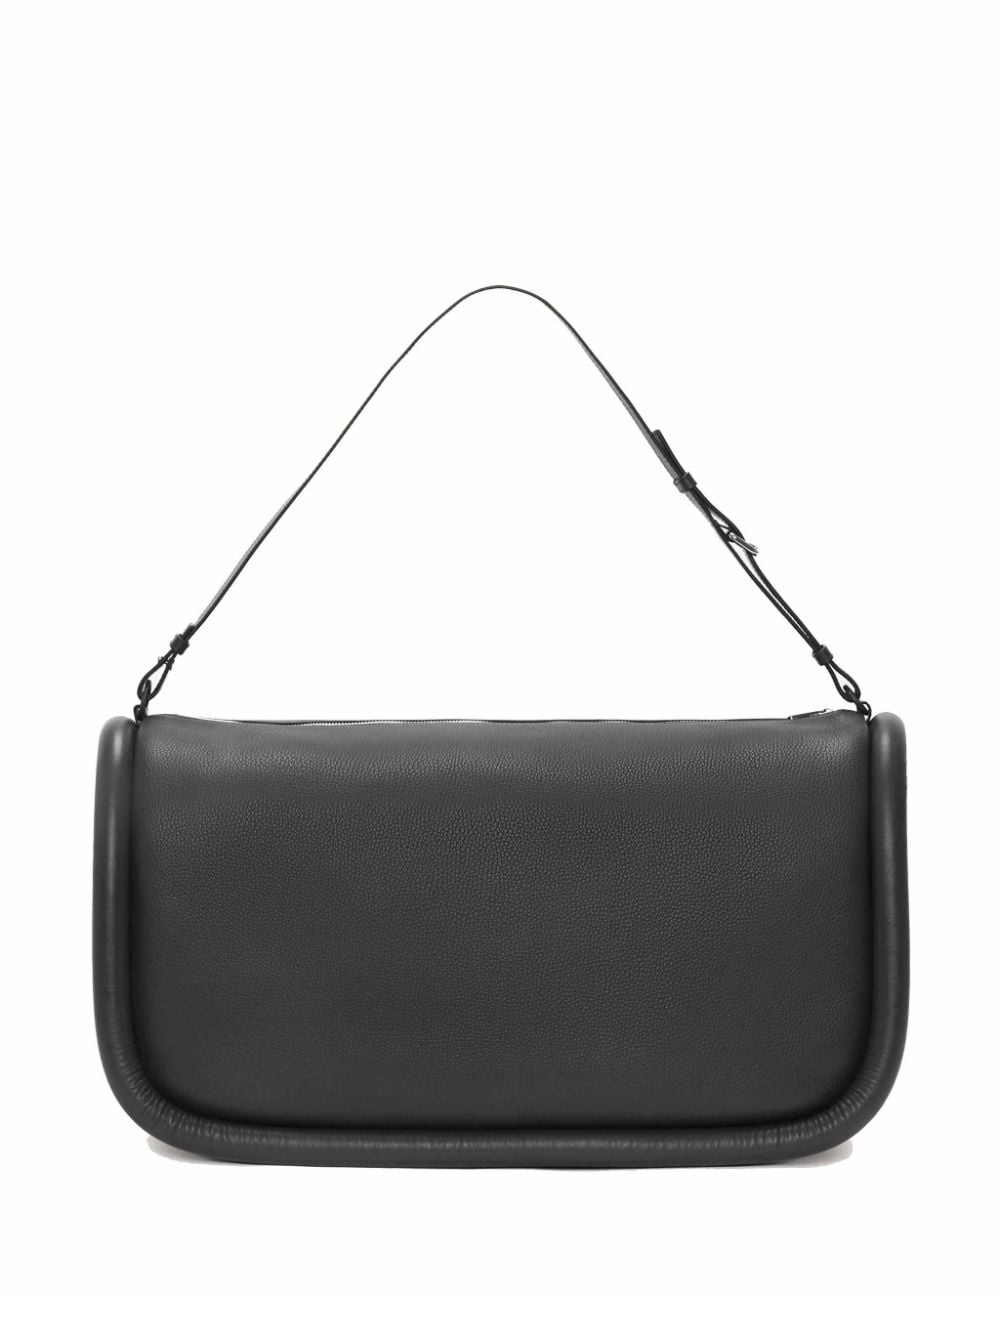 Bumper-36 leather shoulder bag - 2